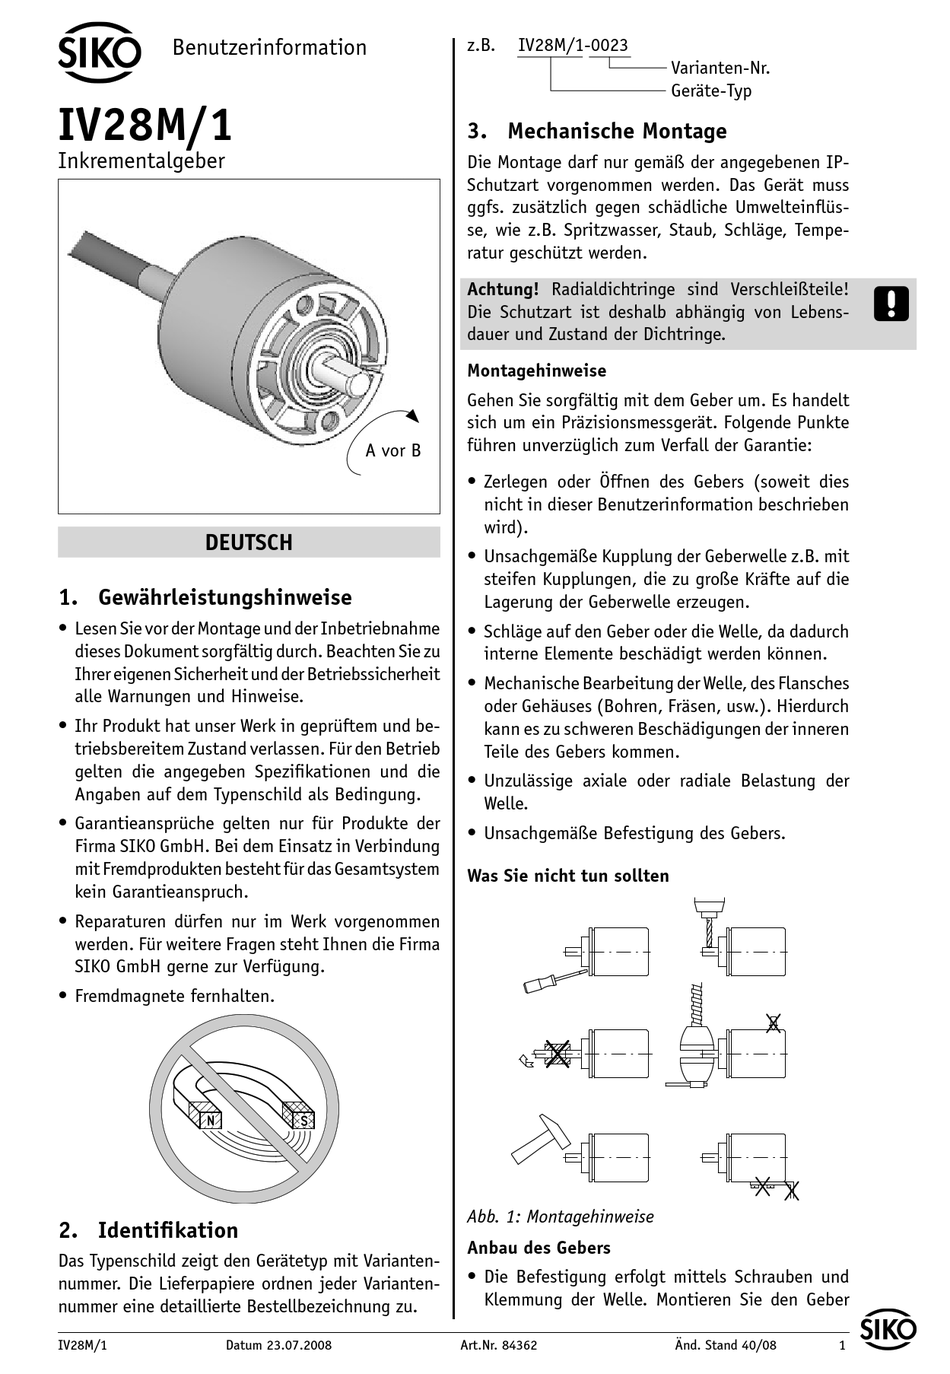 SIKO IV28M/1 USER INFORMATION Pdf Download | ManualsLib